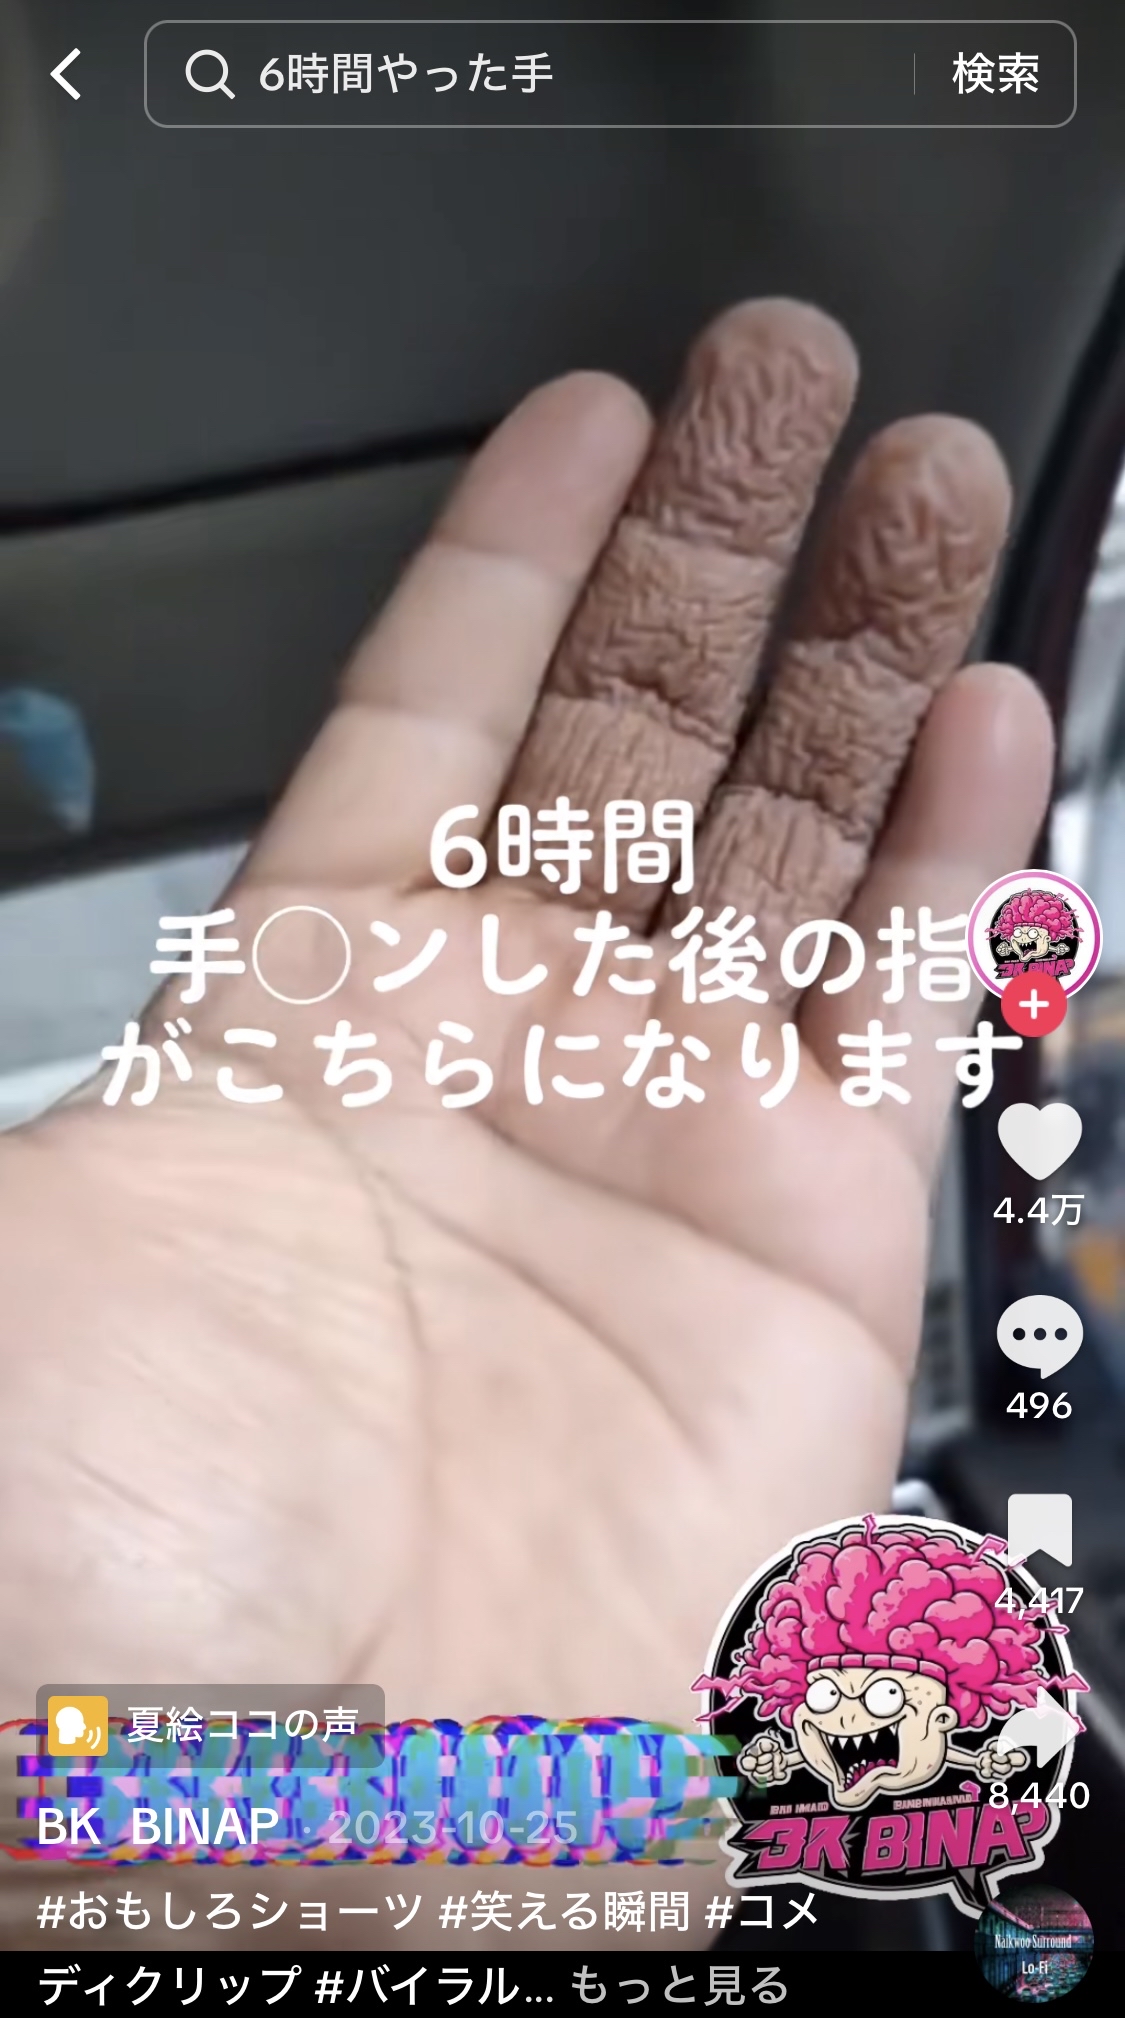 【画像】6時間手マンをした男の指が凄い